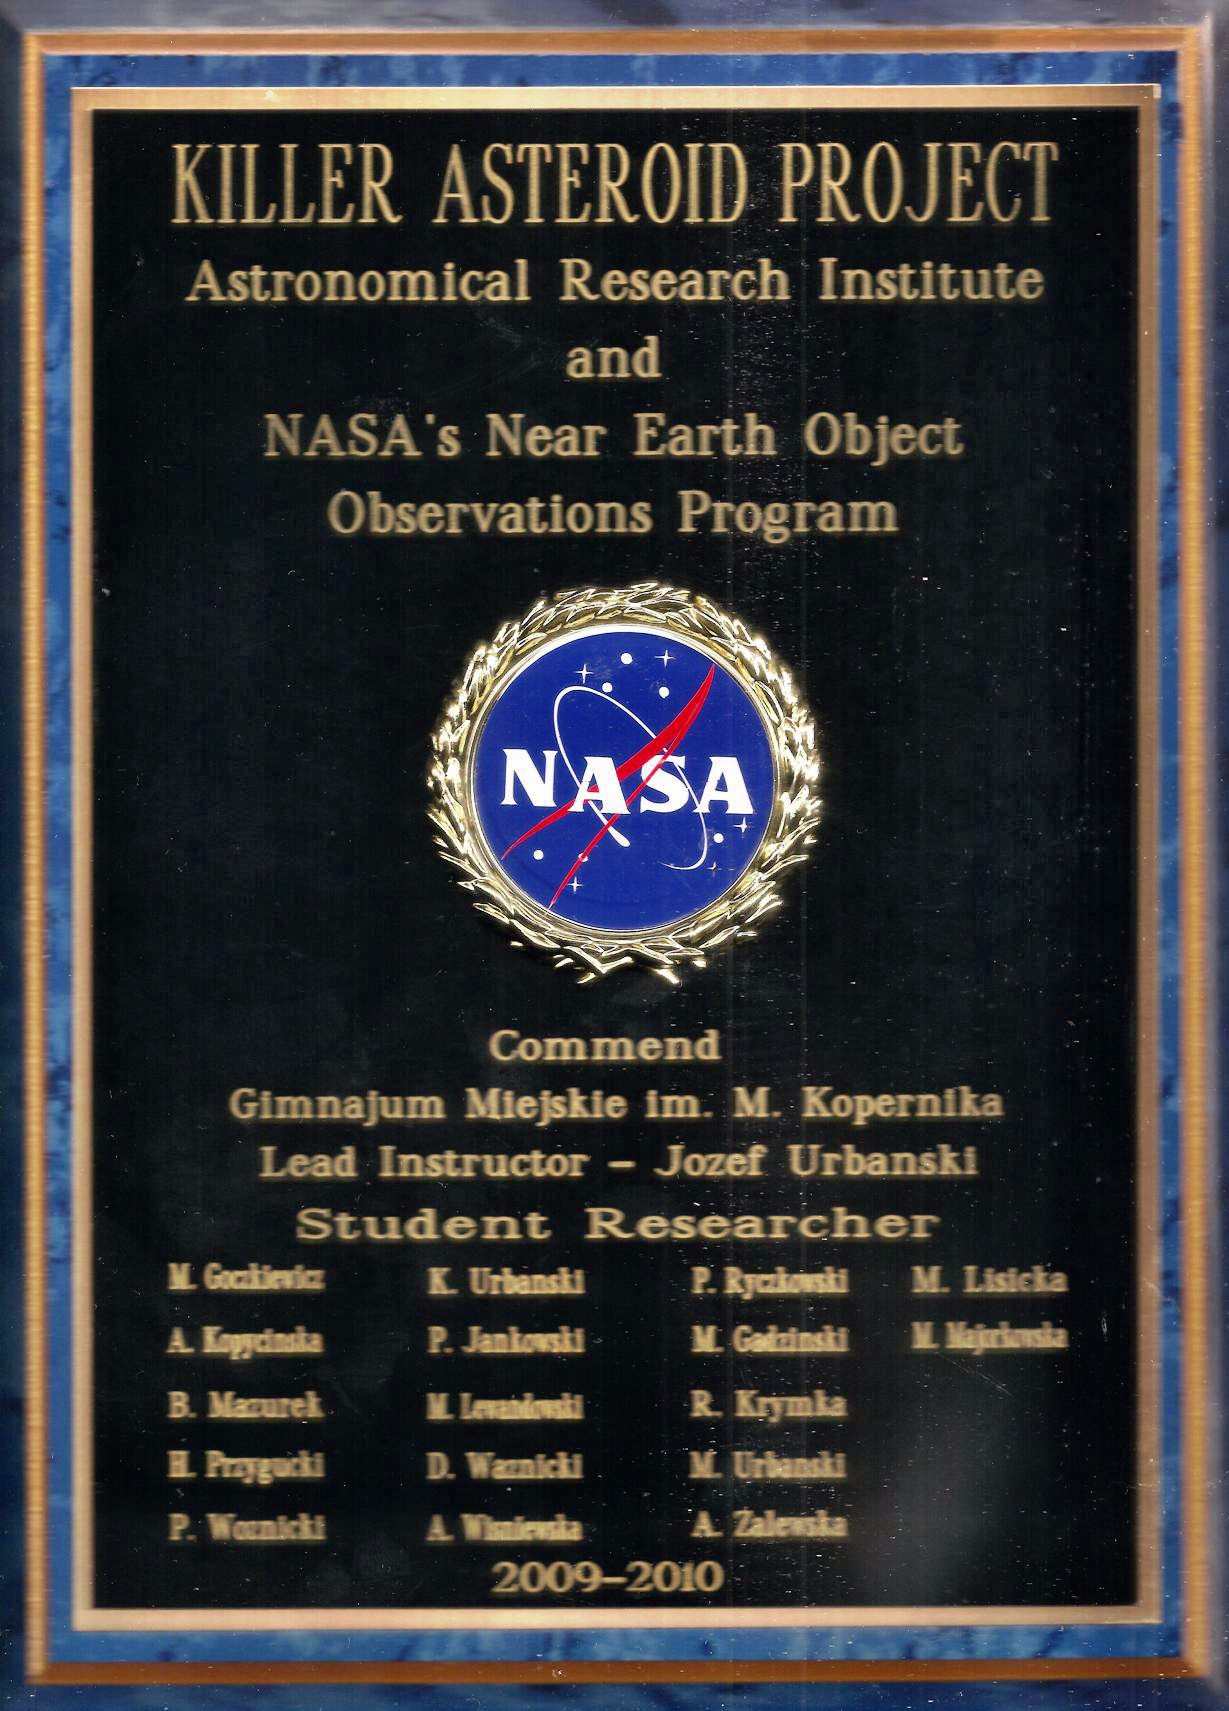 Zdjęcie pomiątkowej tablicy NASA i przykładowy dyplom.